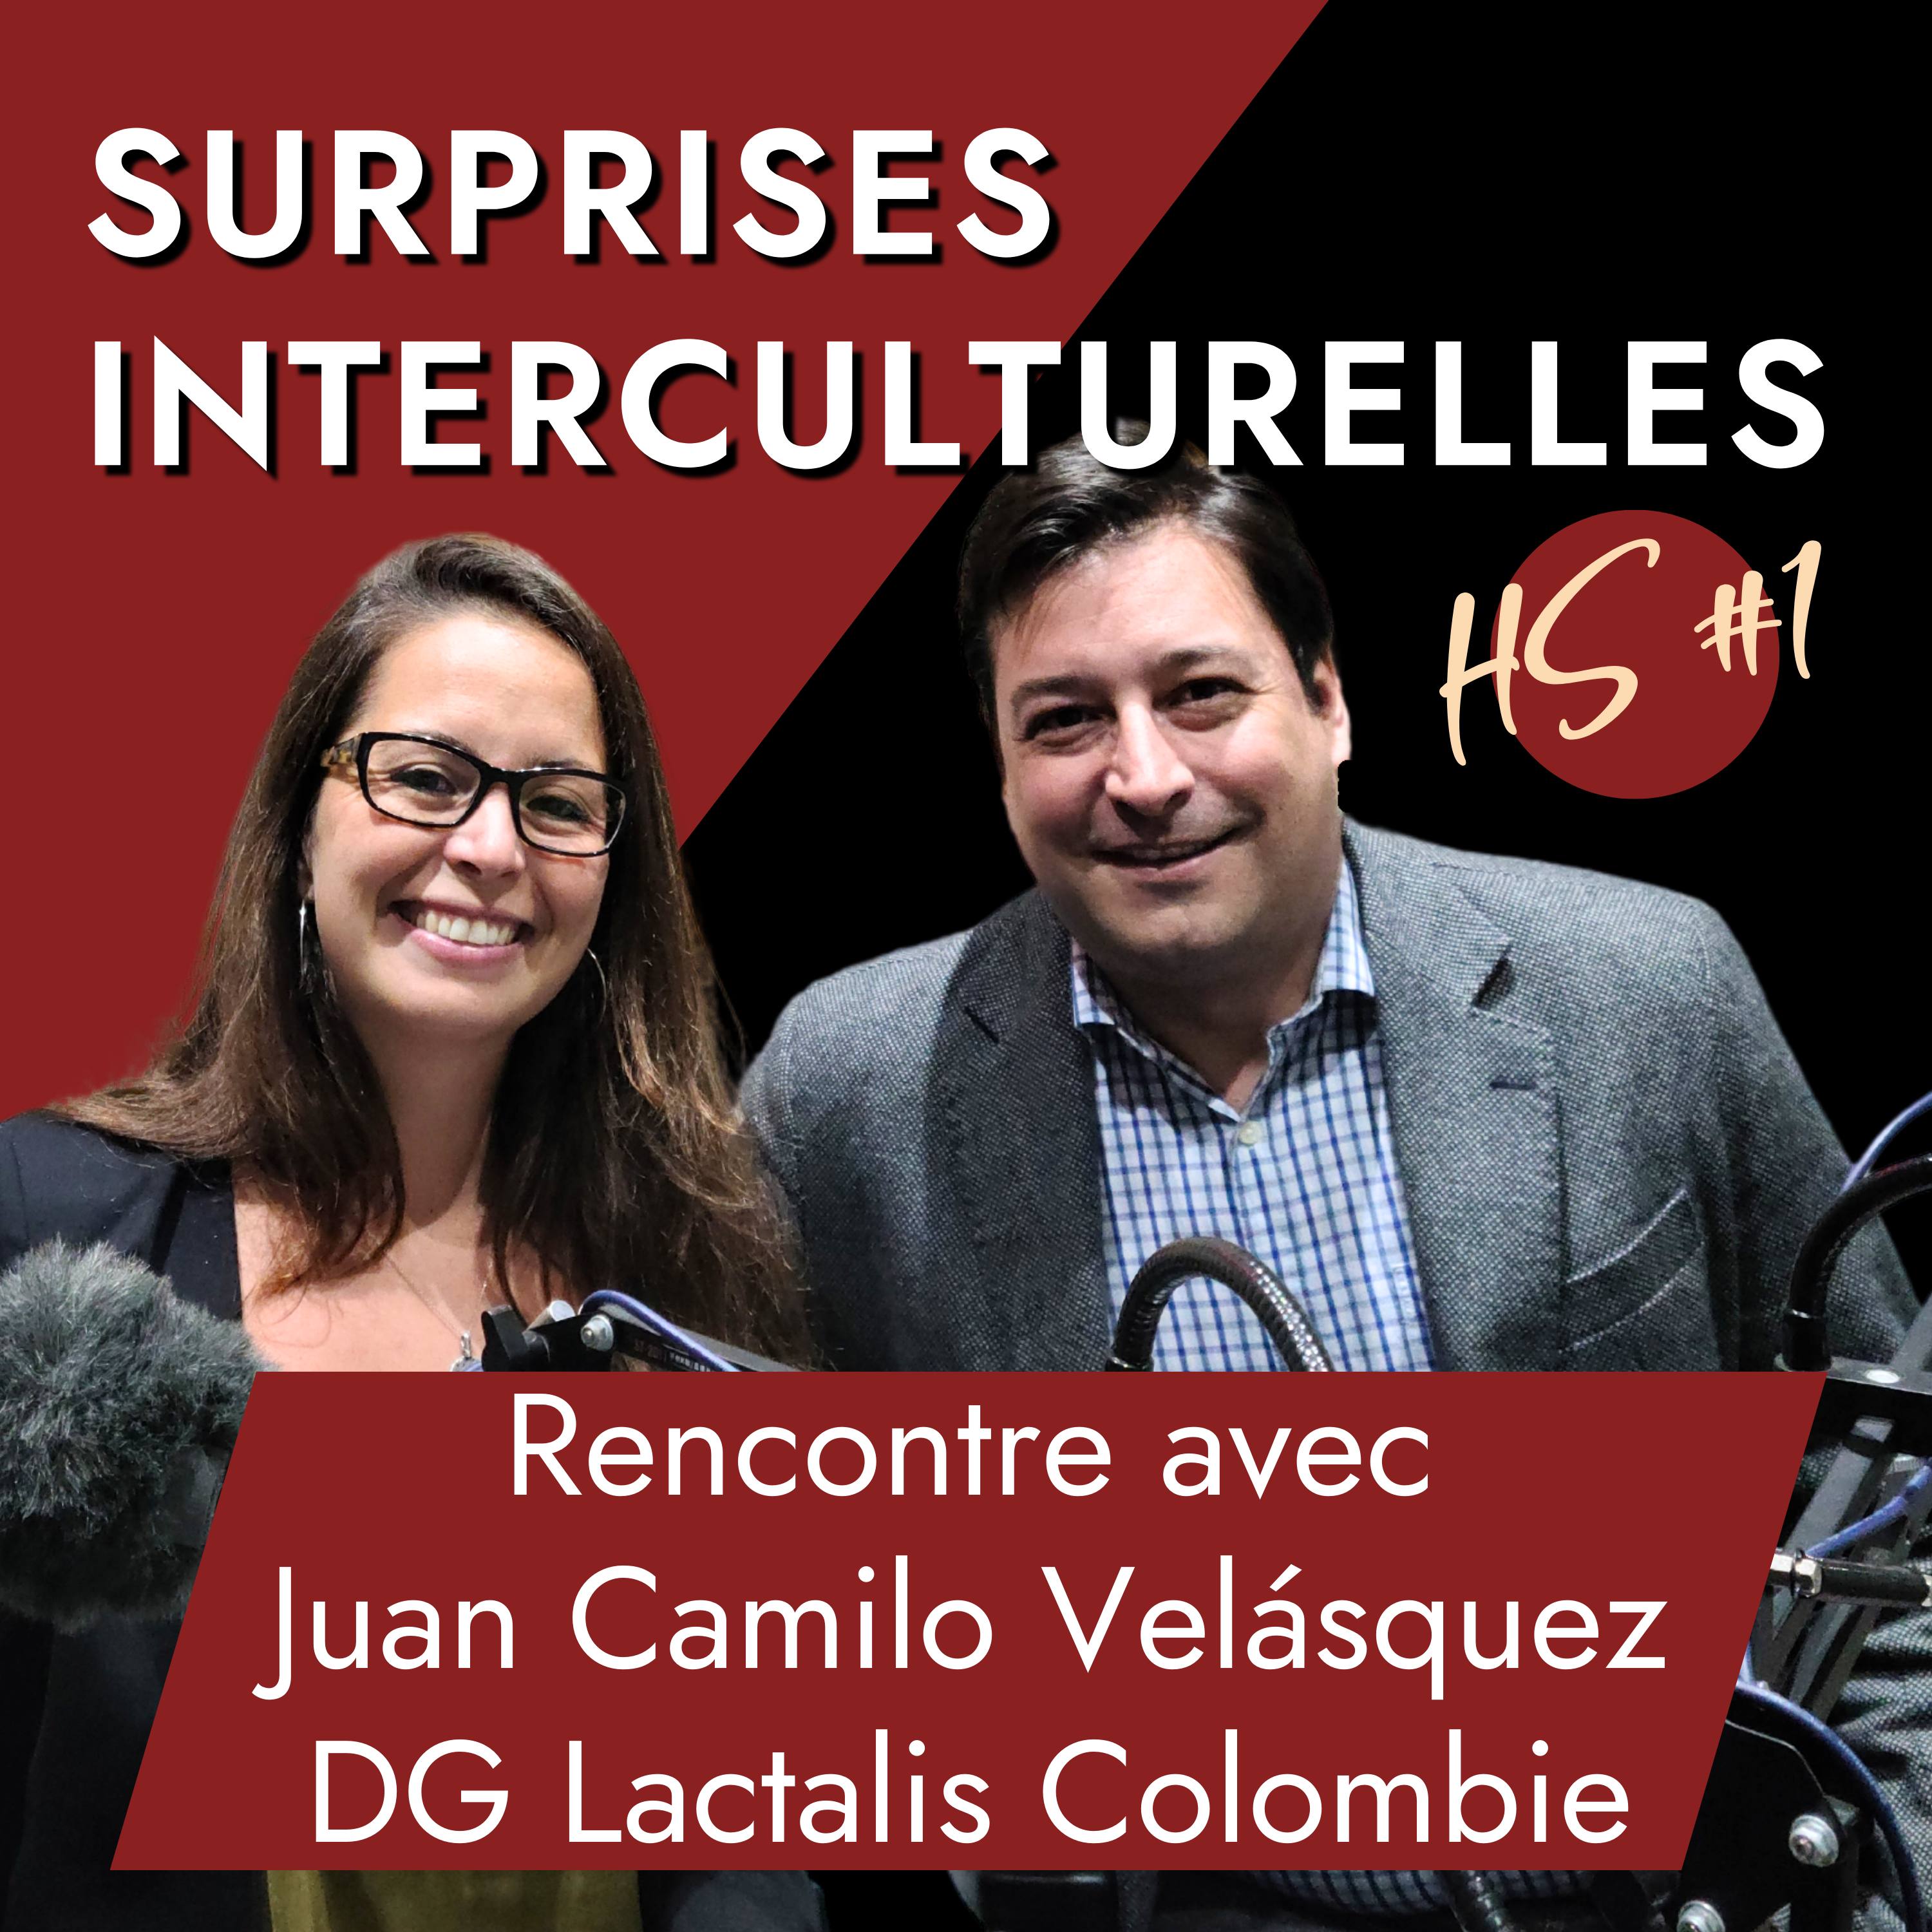 Cover hors-série Surprises Interculturelles Lactalis Juan Camilo Velasquez